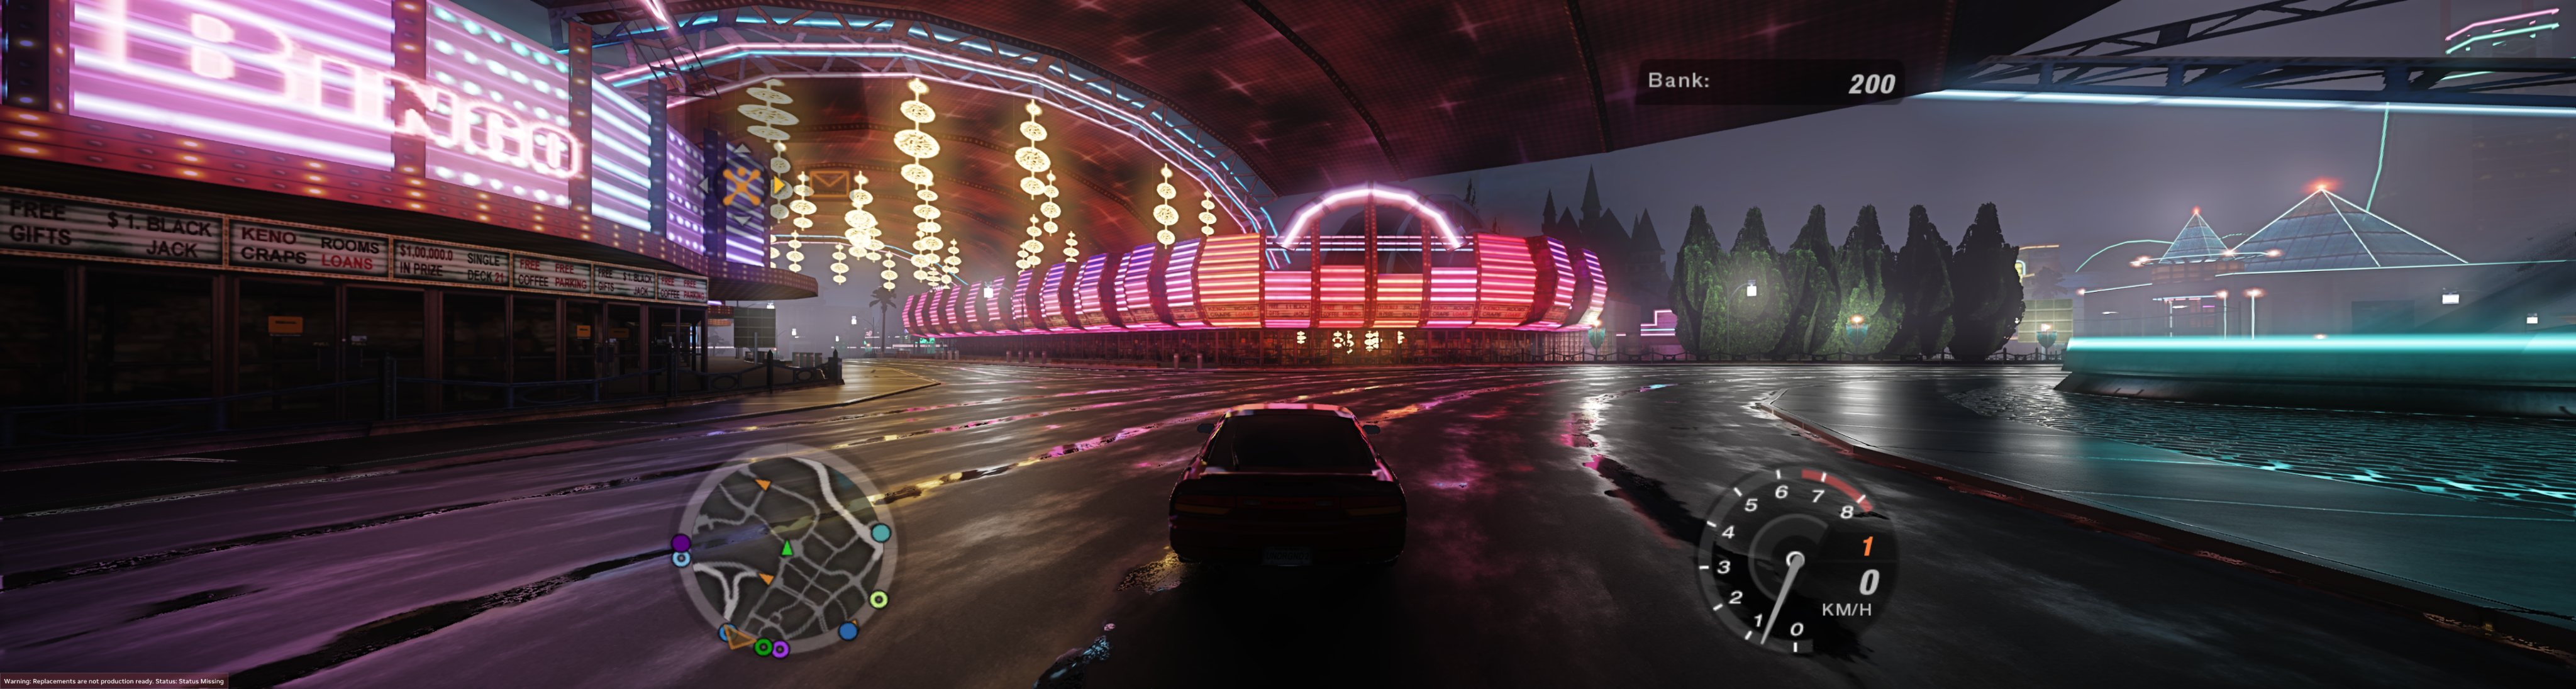 Need For Speed Underground 2 com RTX é o sonho de infância tornado realidade